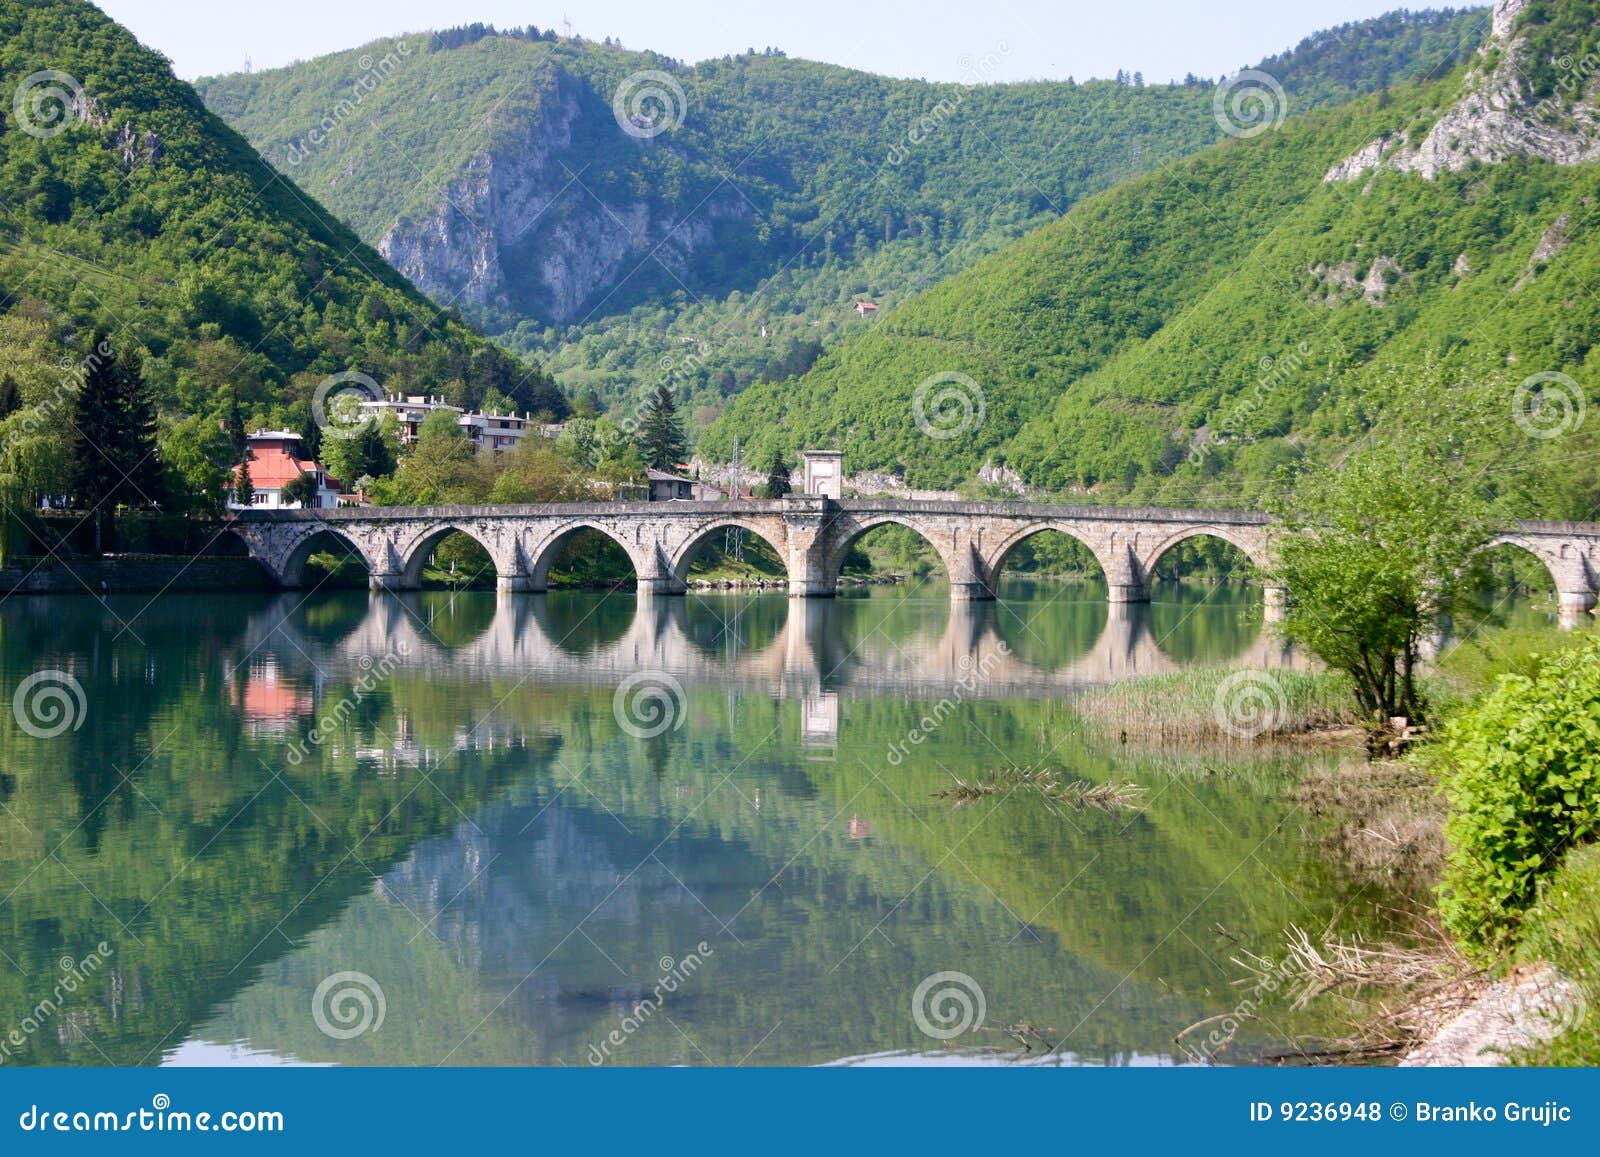 famous bridge on drina river